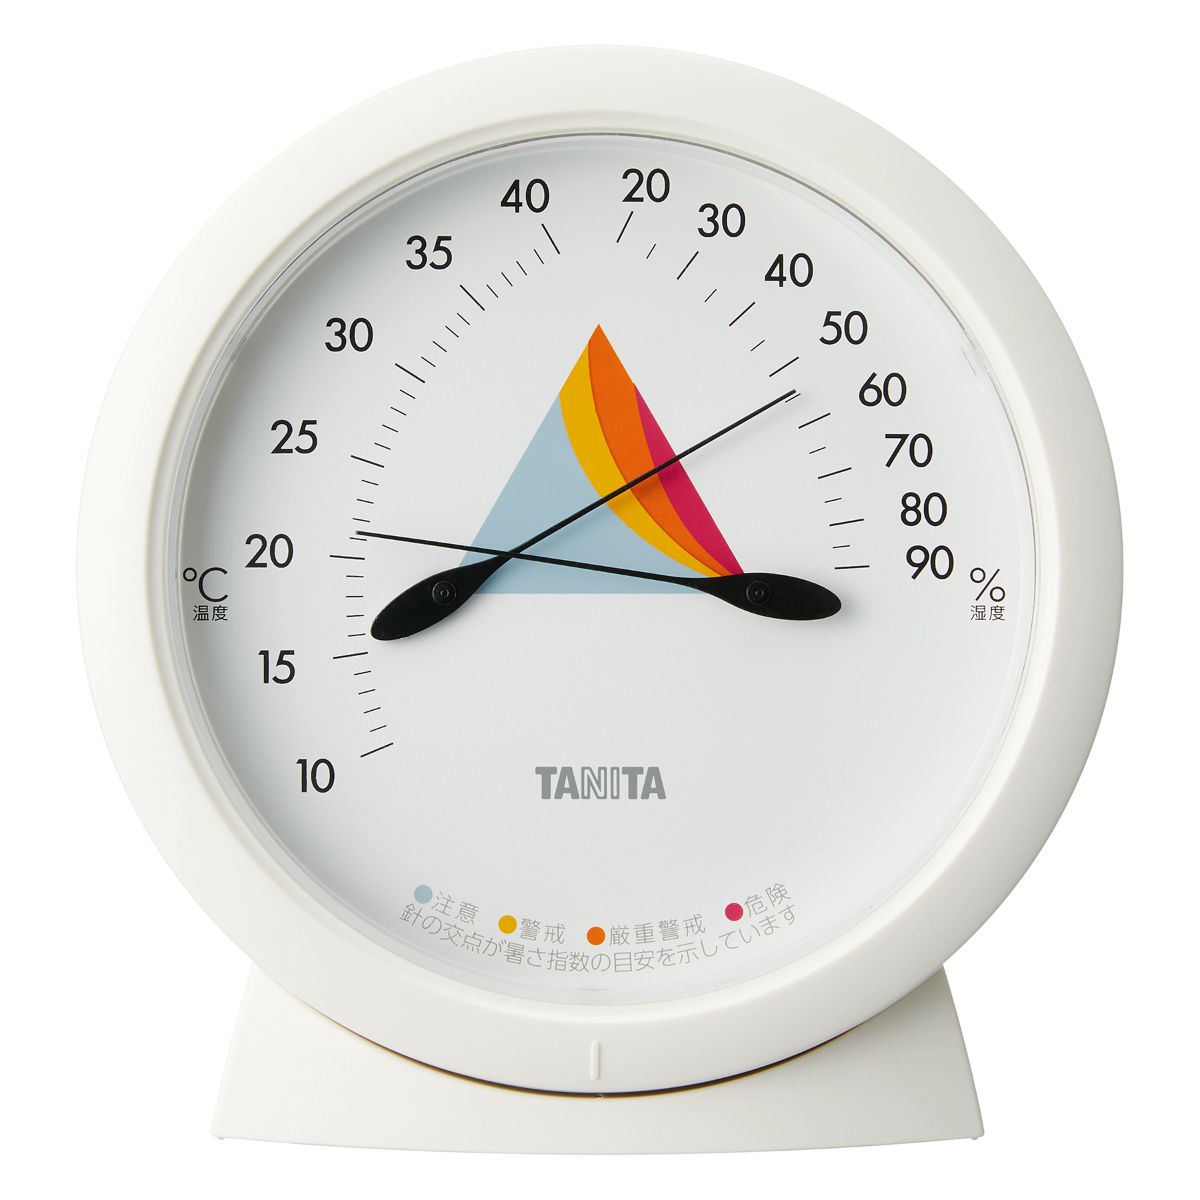 タニタ TANITA コンデイションセンサー アイボリー TC-420-IV